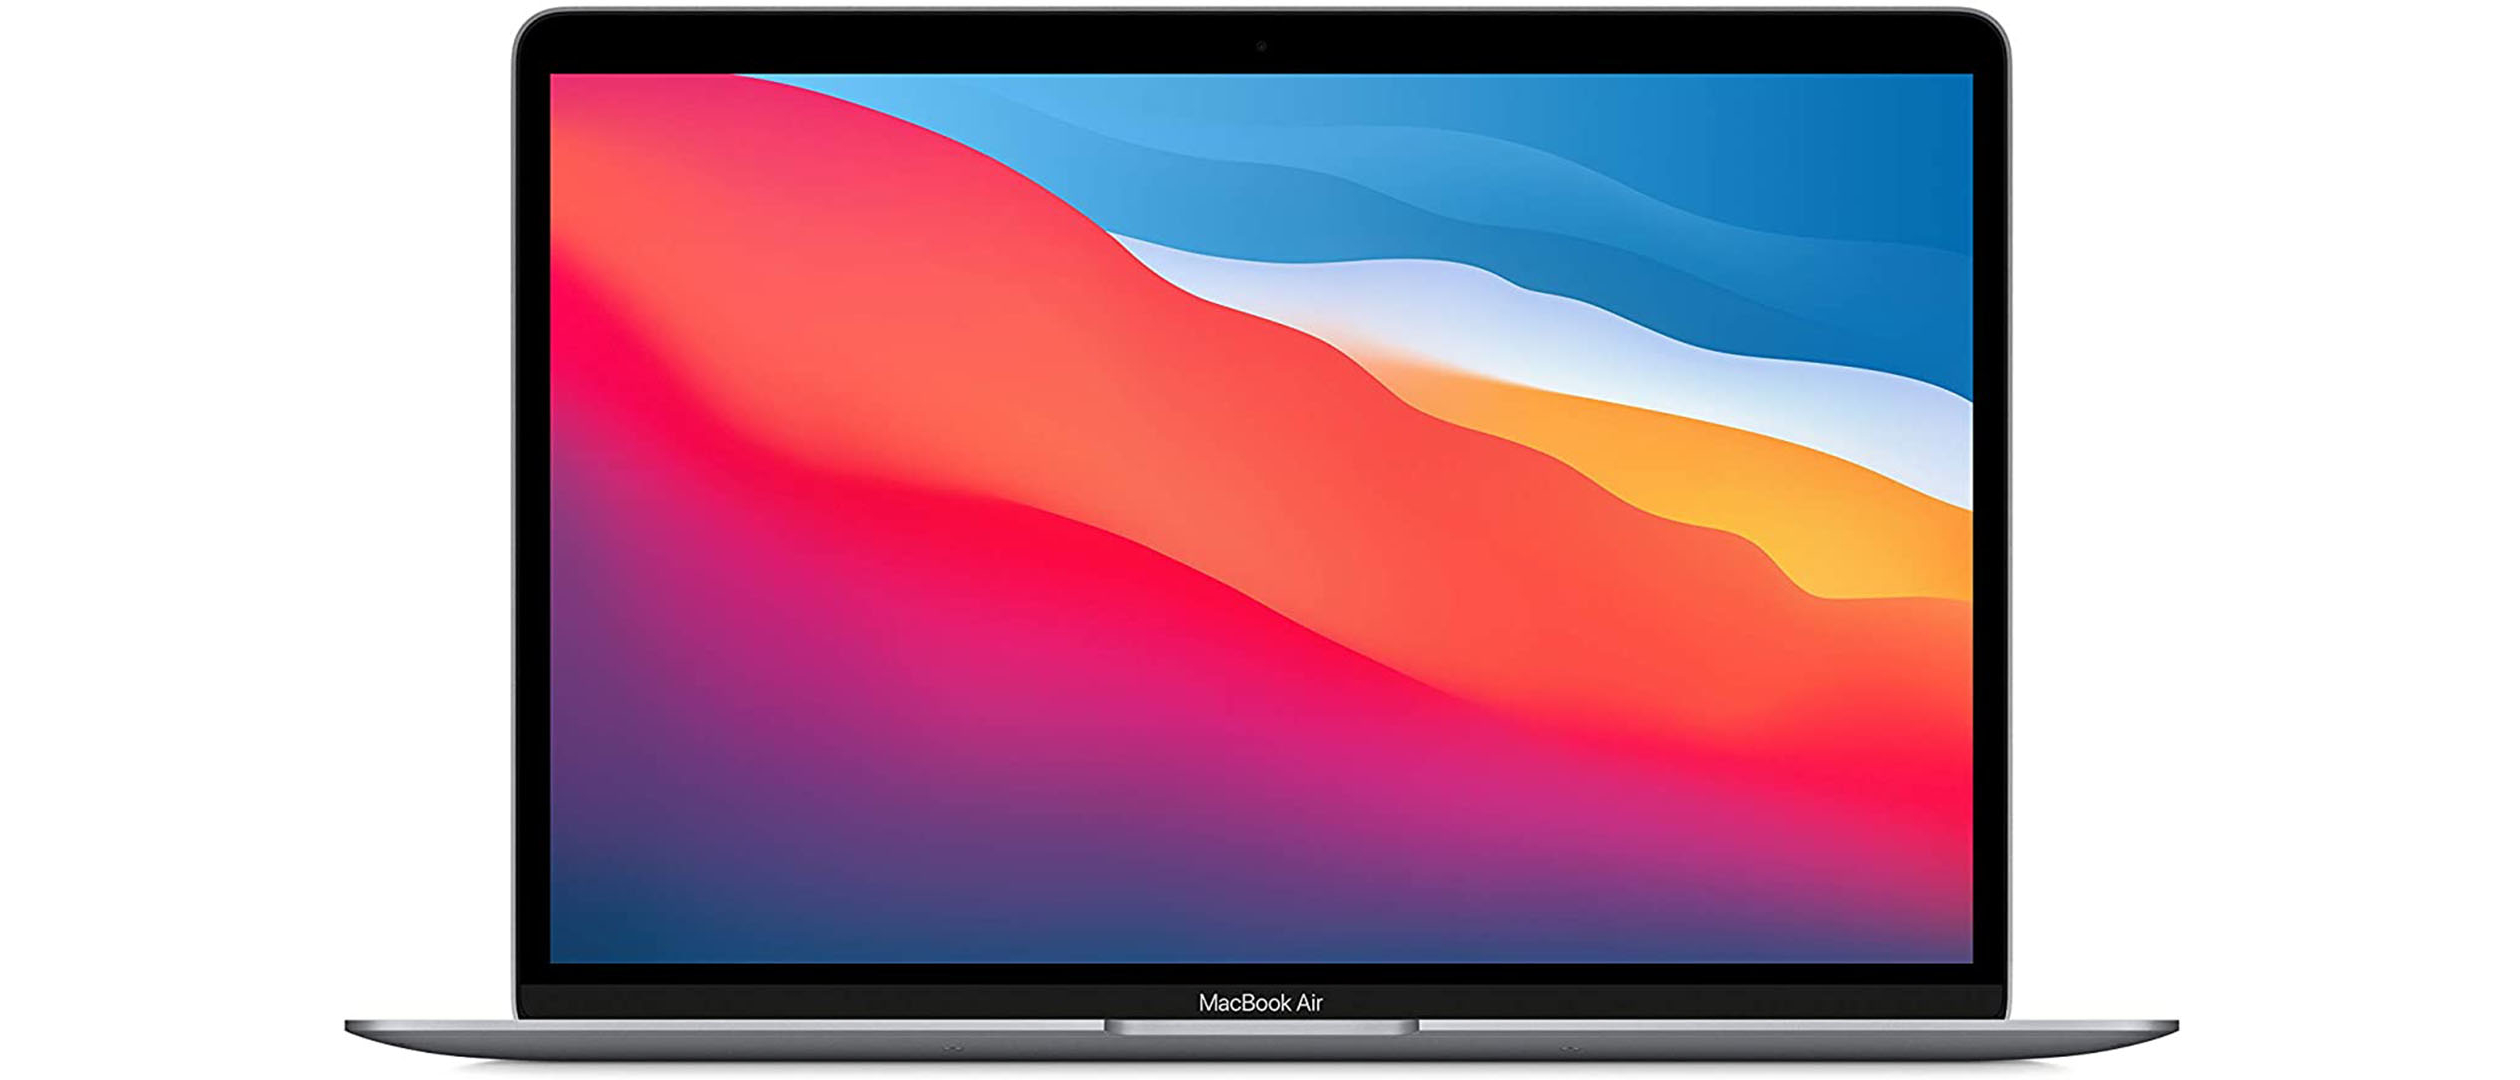 MacBook Air (M1 chip) vs MacBook Air (Intel): Should you upgrade?